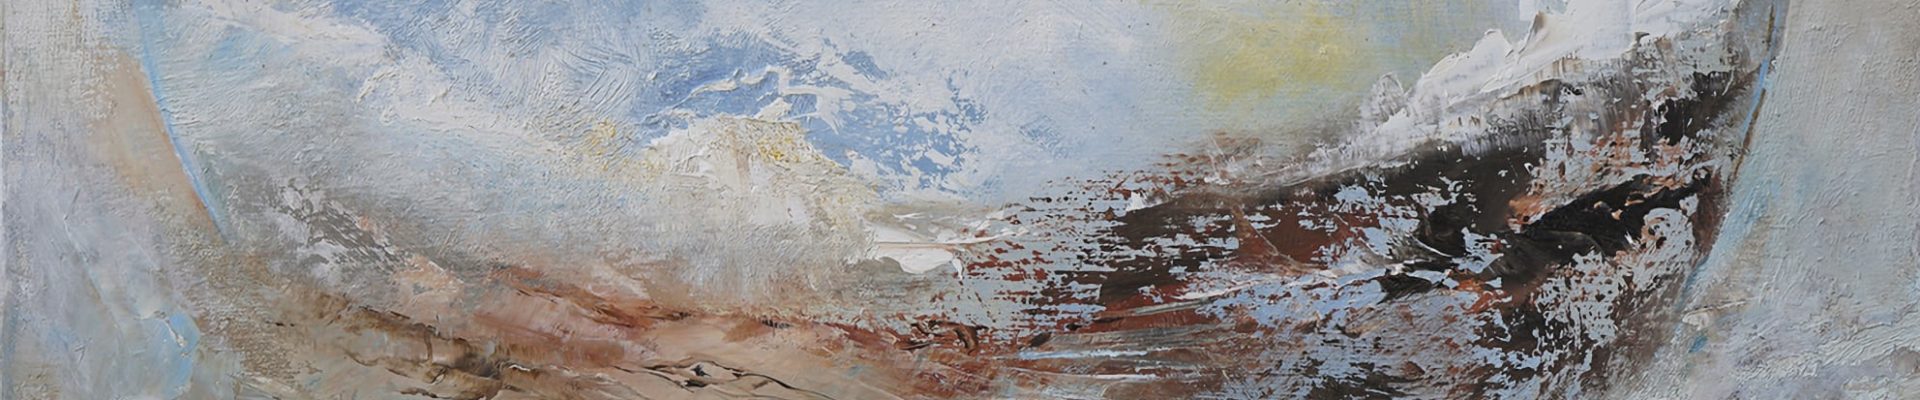 [Exposition] « La terre au cœur » Peinture Marie-Anne Mouton et les artistes de son atelier école au CINE de Bussiere